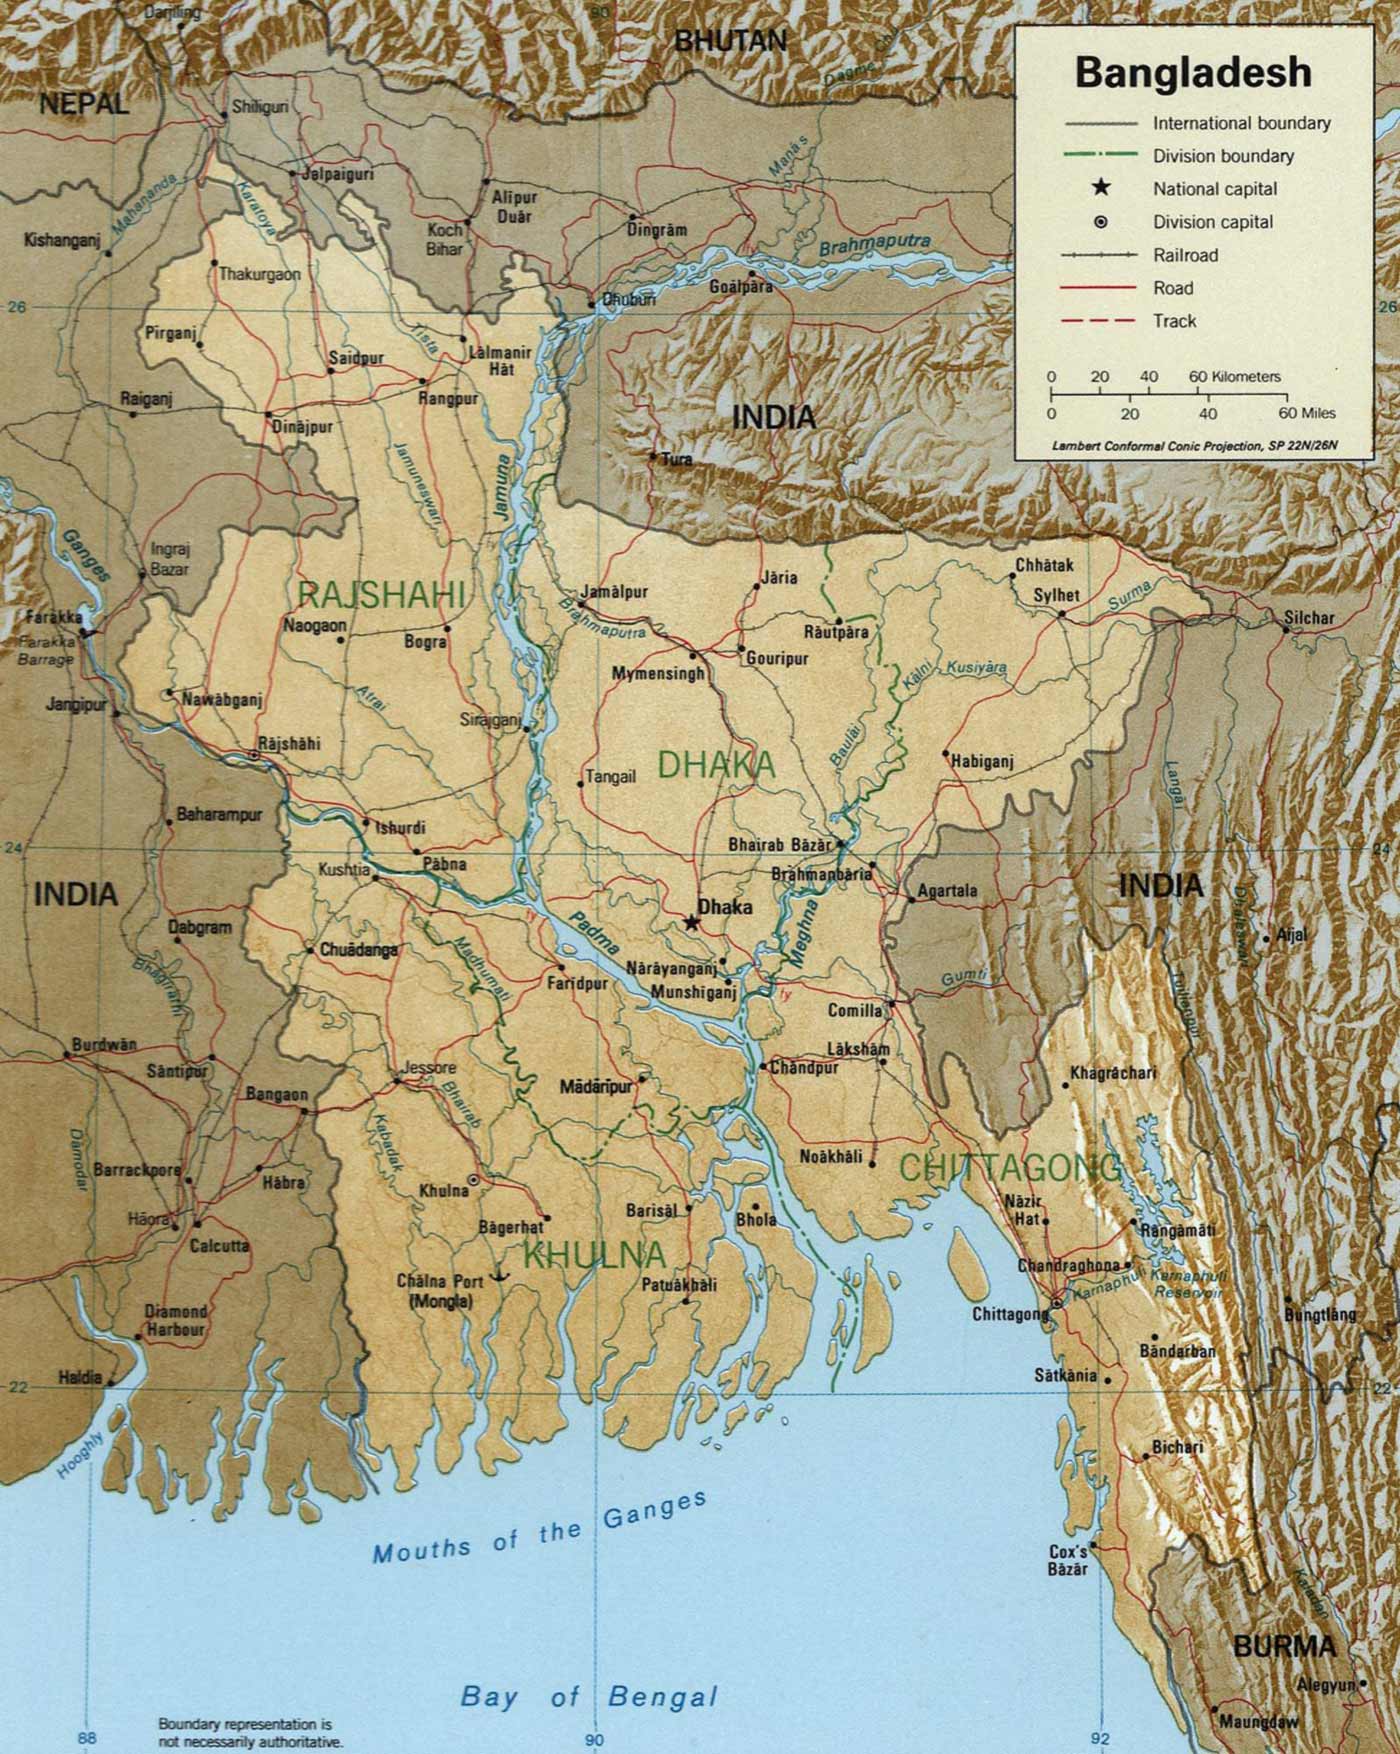 banglades_loc_1996_harita.jpg